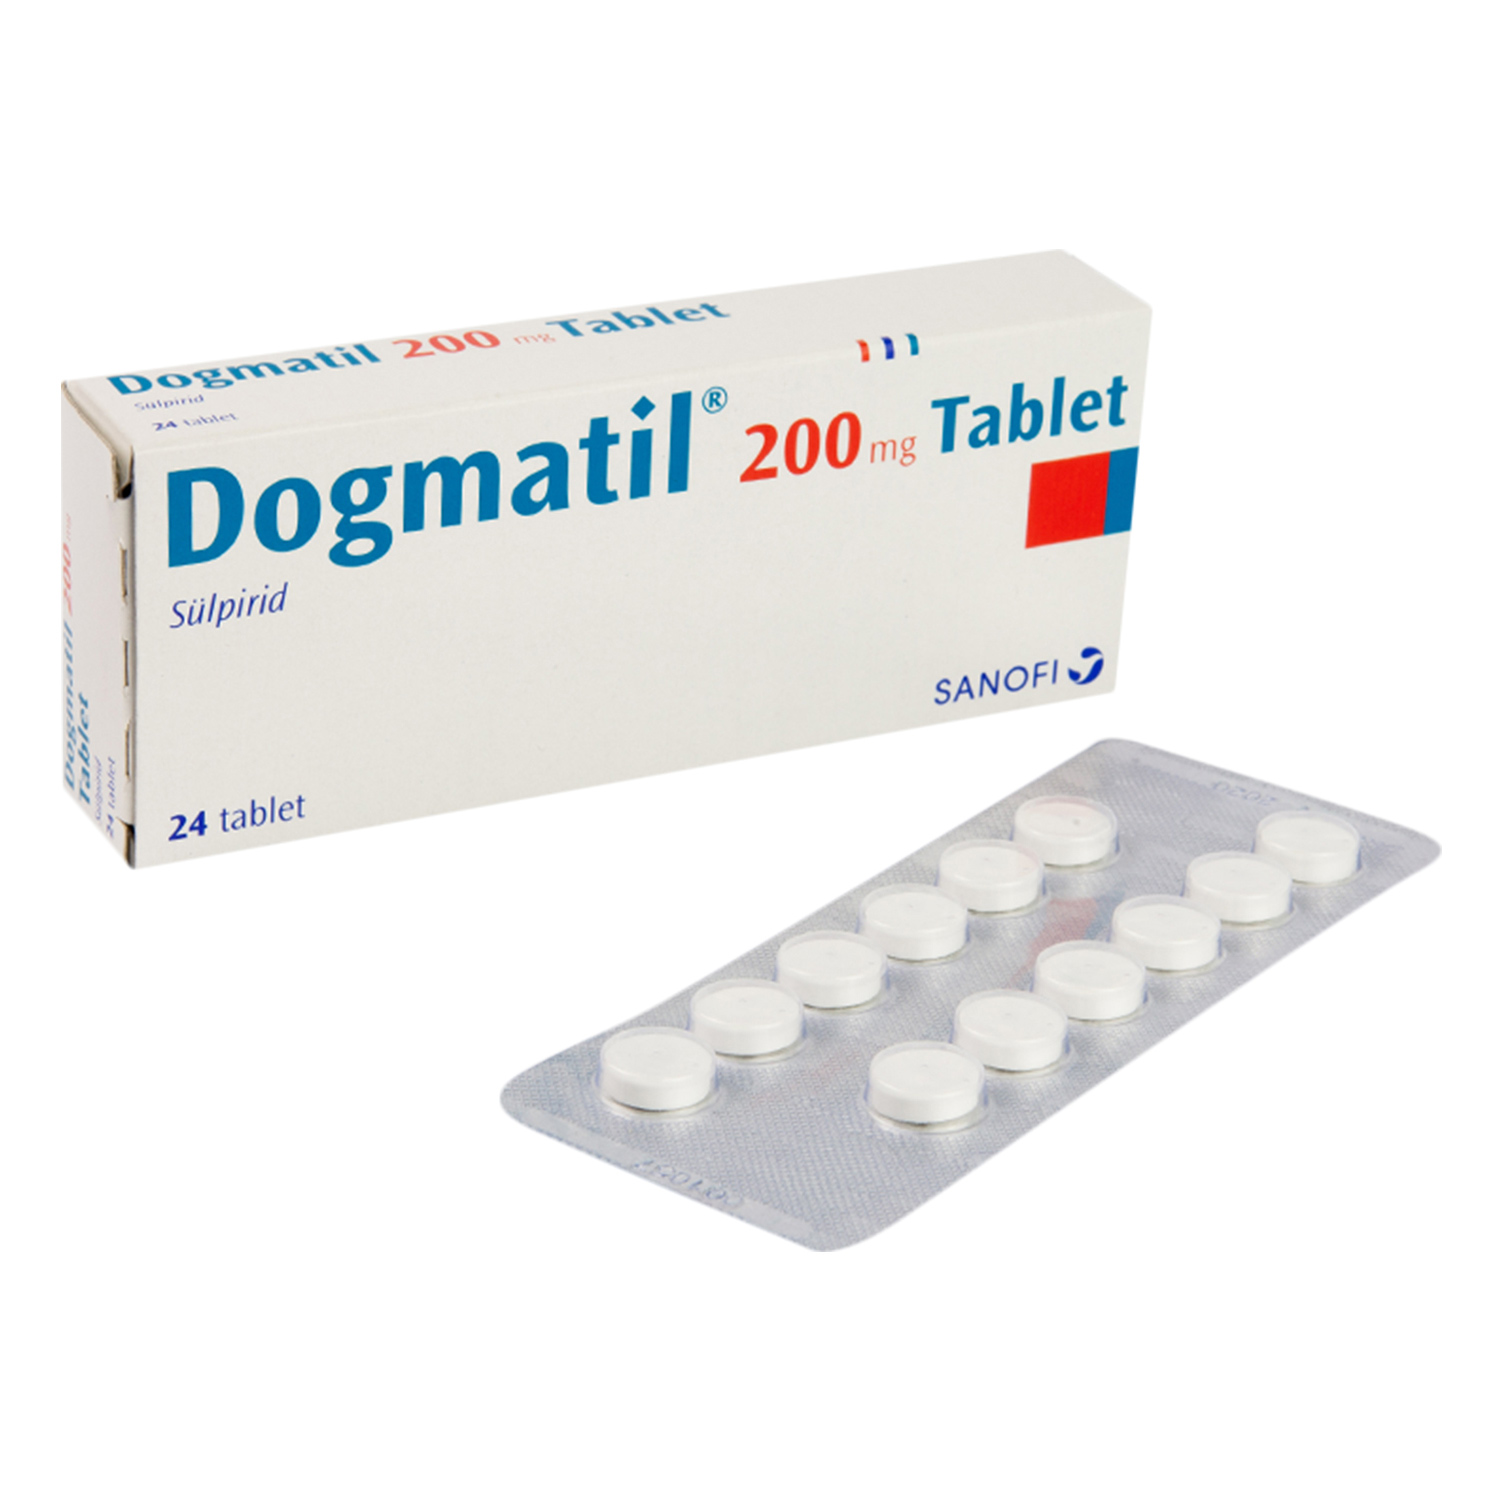 ドグマチール0mg スルピリド 通販 統合失調症 抗うつ剤 効果 口コミ 副作用 用法用量 ユニドラ